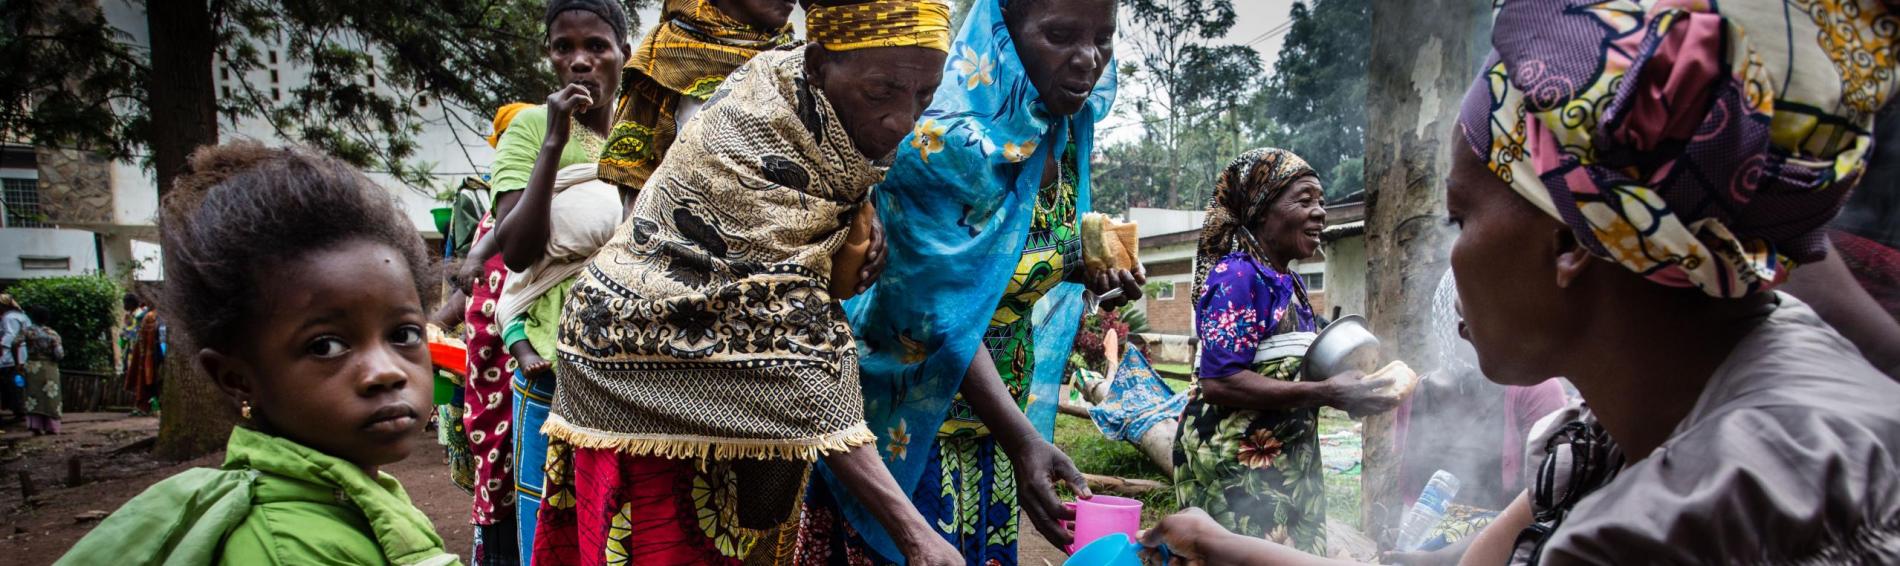 Des femmes congolaises viennent remplir leurs tasses auprès d'une autre femme, qui gère un grand bassin.